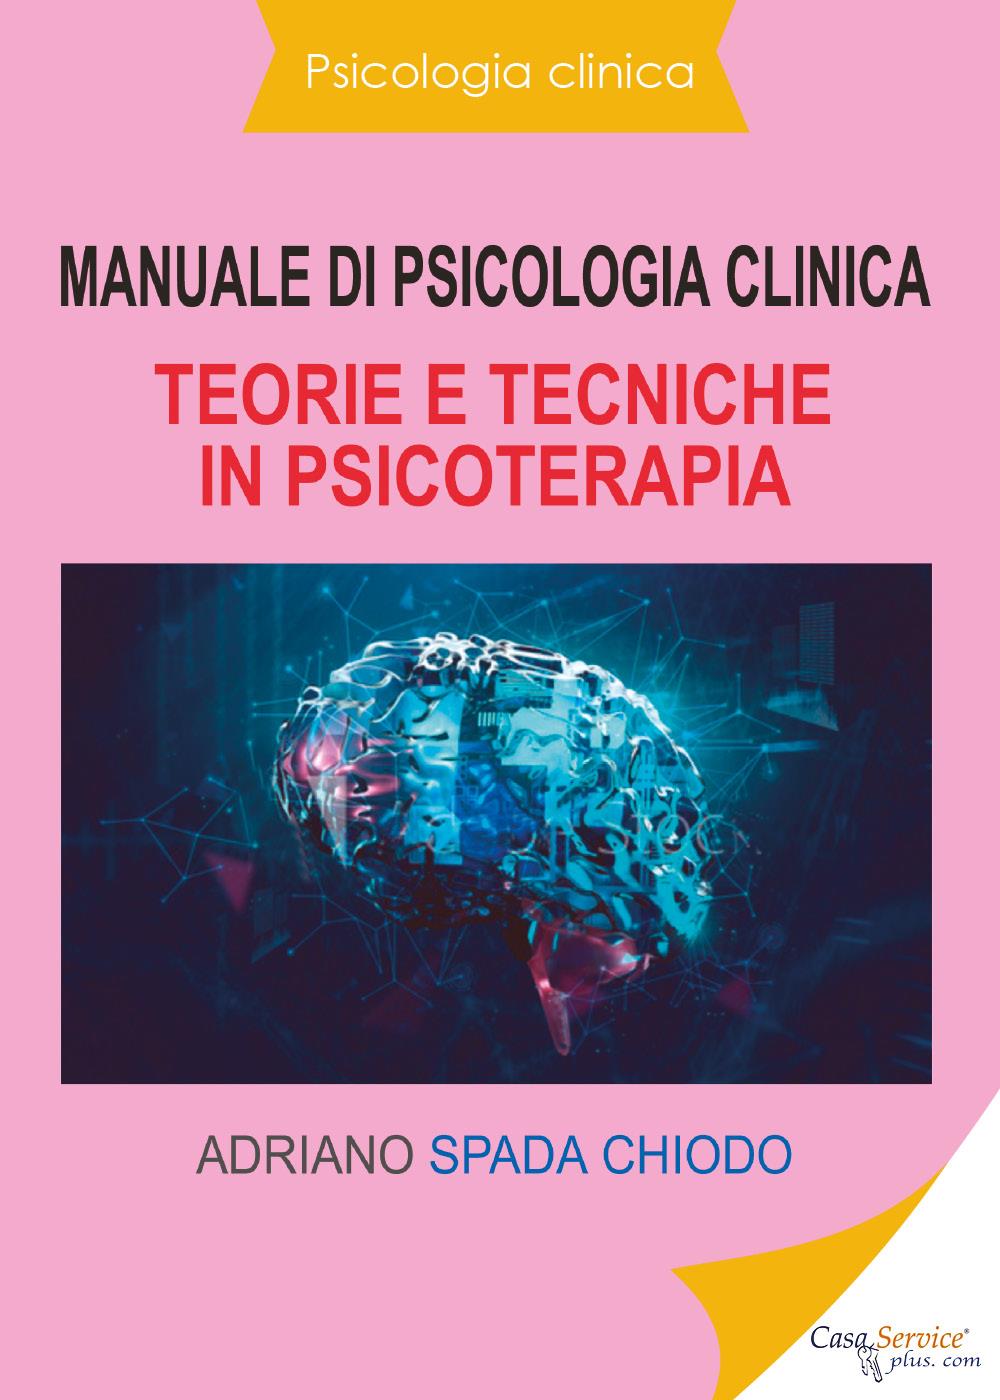 Psicologia clinica - Manuale di psicologia clinica - Teorie e tecniche in psicoterapia